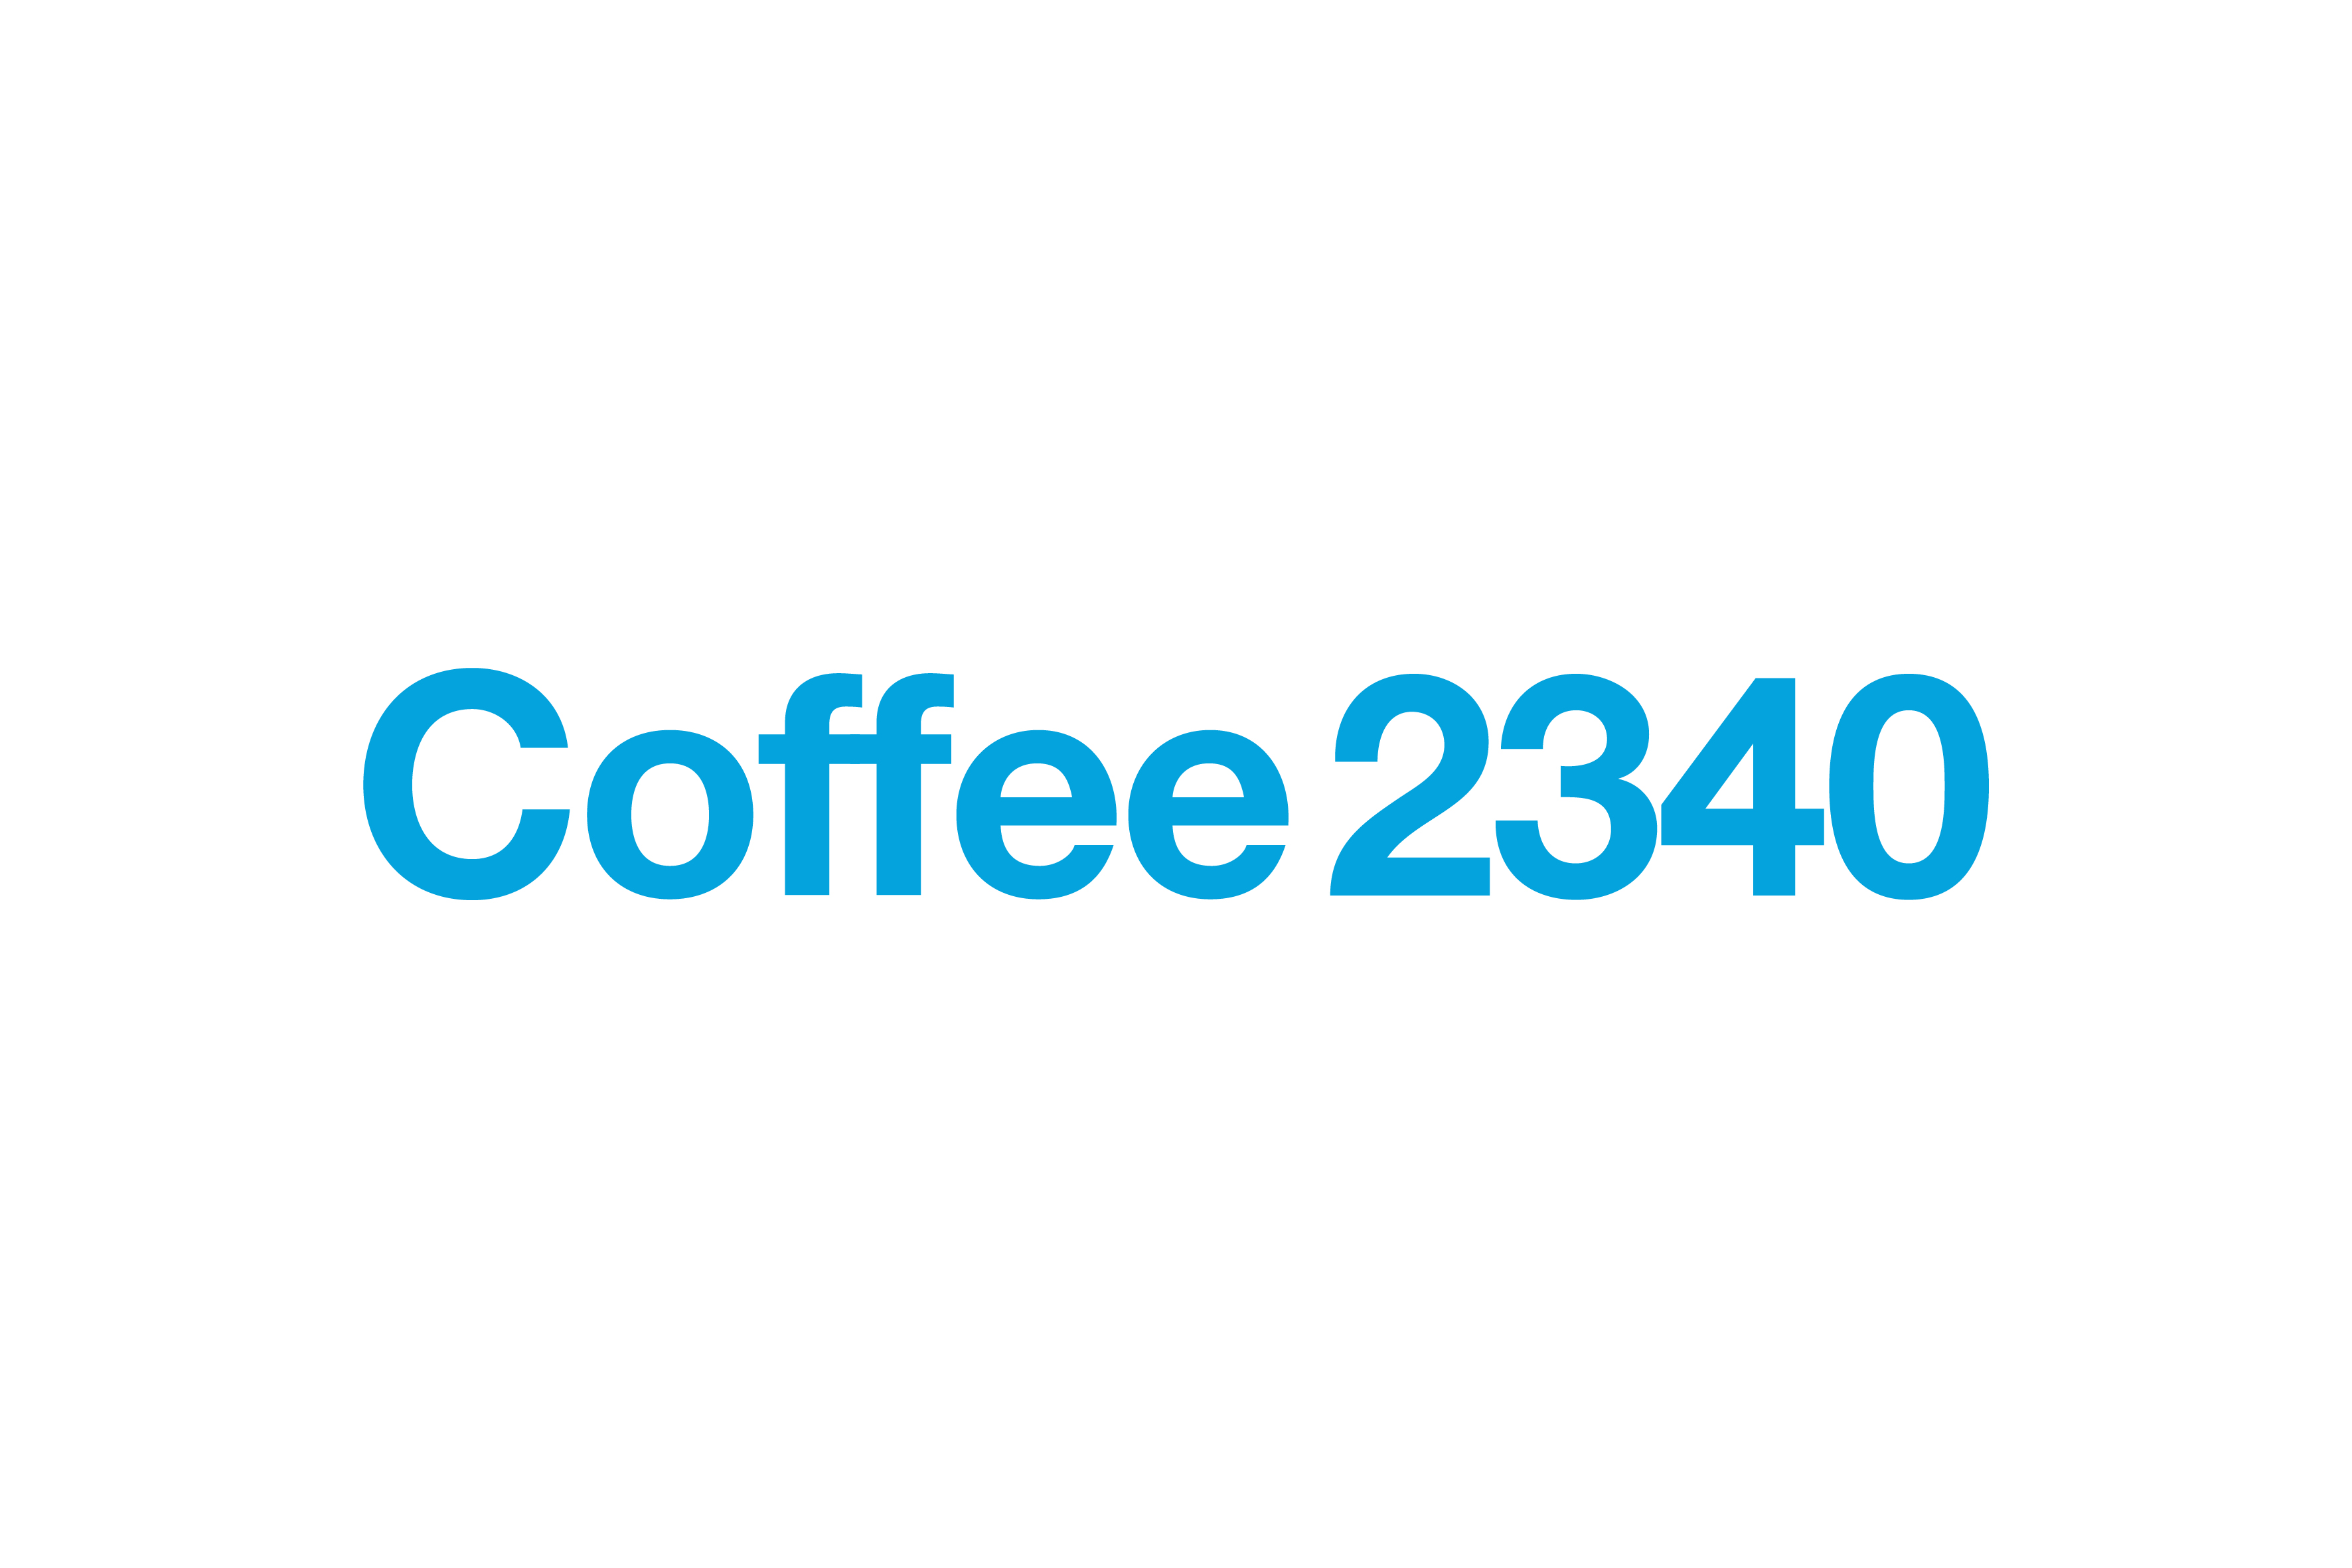 Coffee 2340